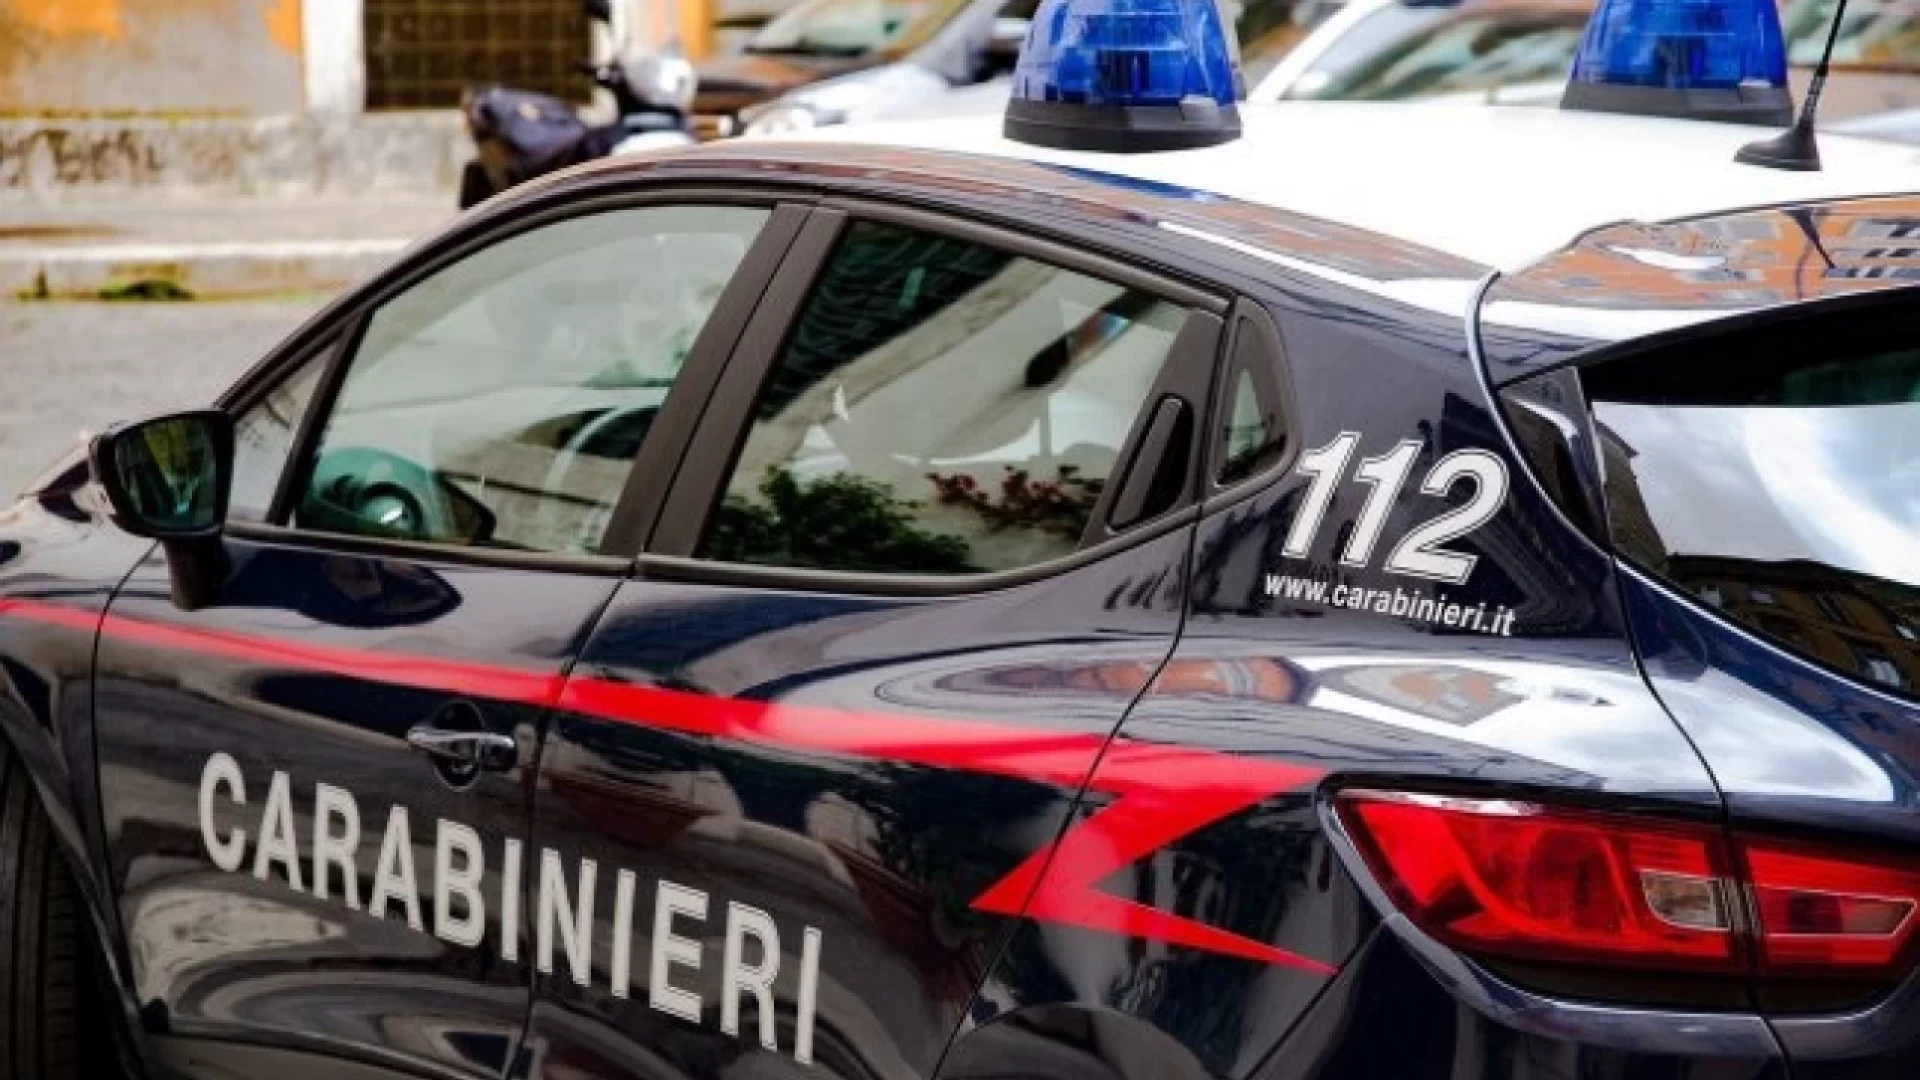 Sulmona: i Carabinieri ritrovano il 57enne scomparso nei giorni scorsi. Intanto l’Arma avra’ a disposizione 11 nuovi Carabinieri da impiegare in provincia.